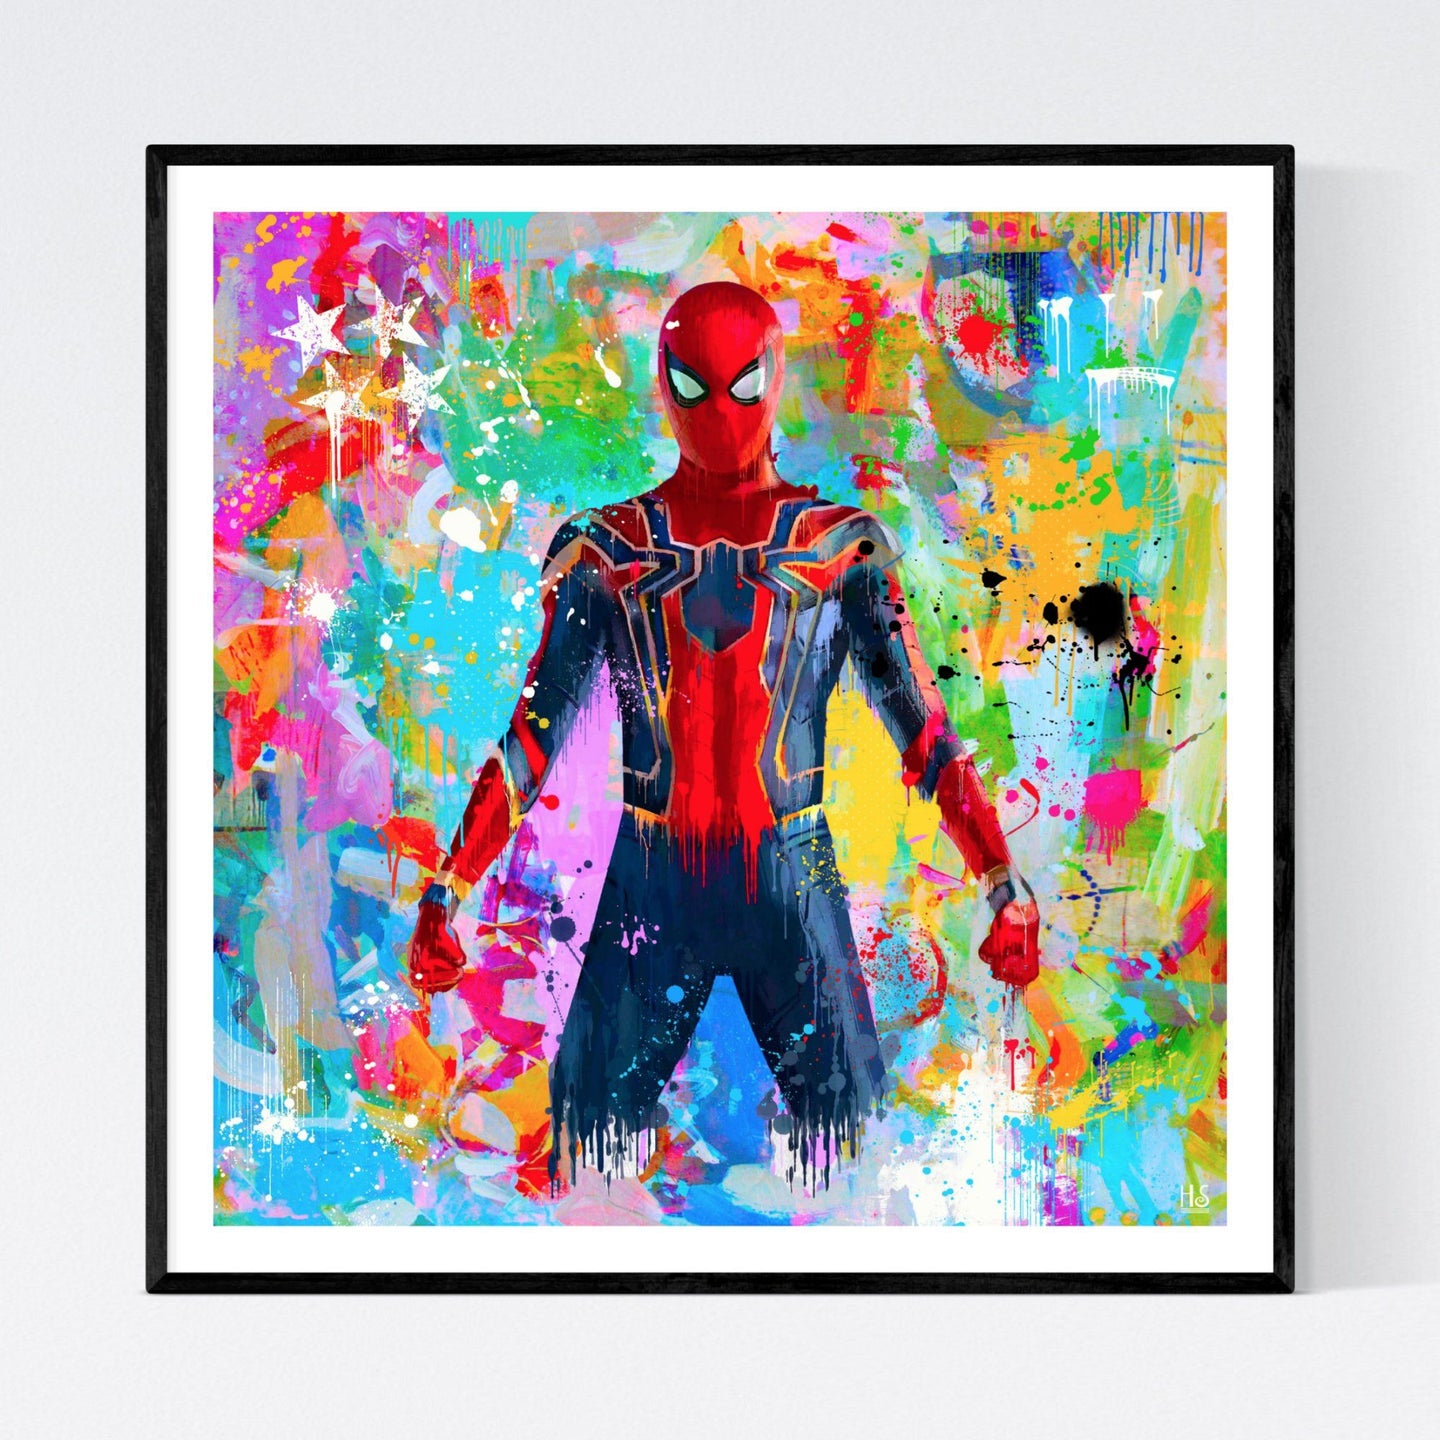 The Avenger - original og iøjnefaldende pop art kunst, der viser Spiderman som nærmest flyder ud på en meget farvefyldt abstrakt baggrund med masser af malerklatter og -stænk - af billedkunstner og pop artist Helt Sort